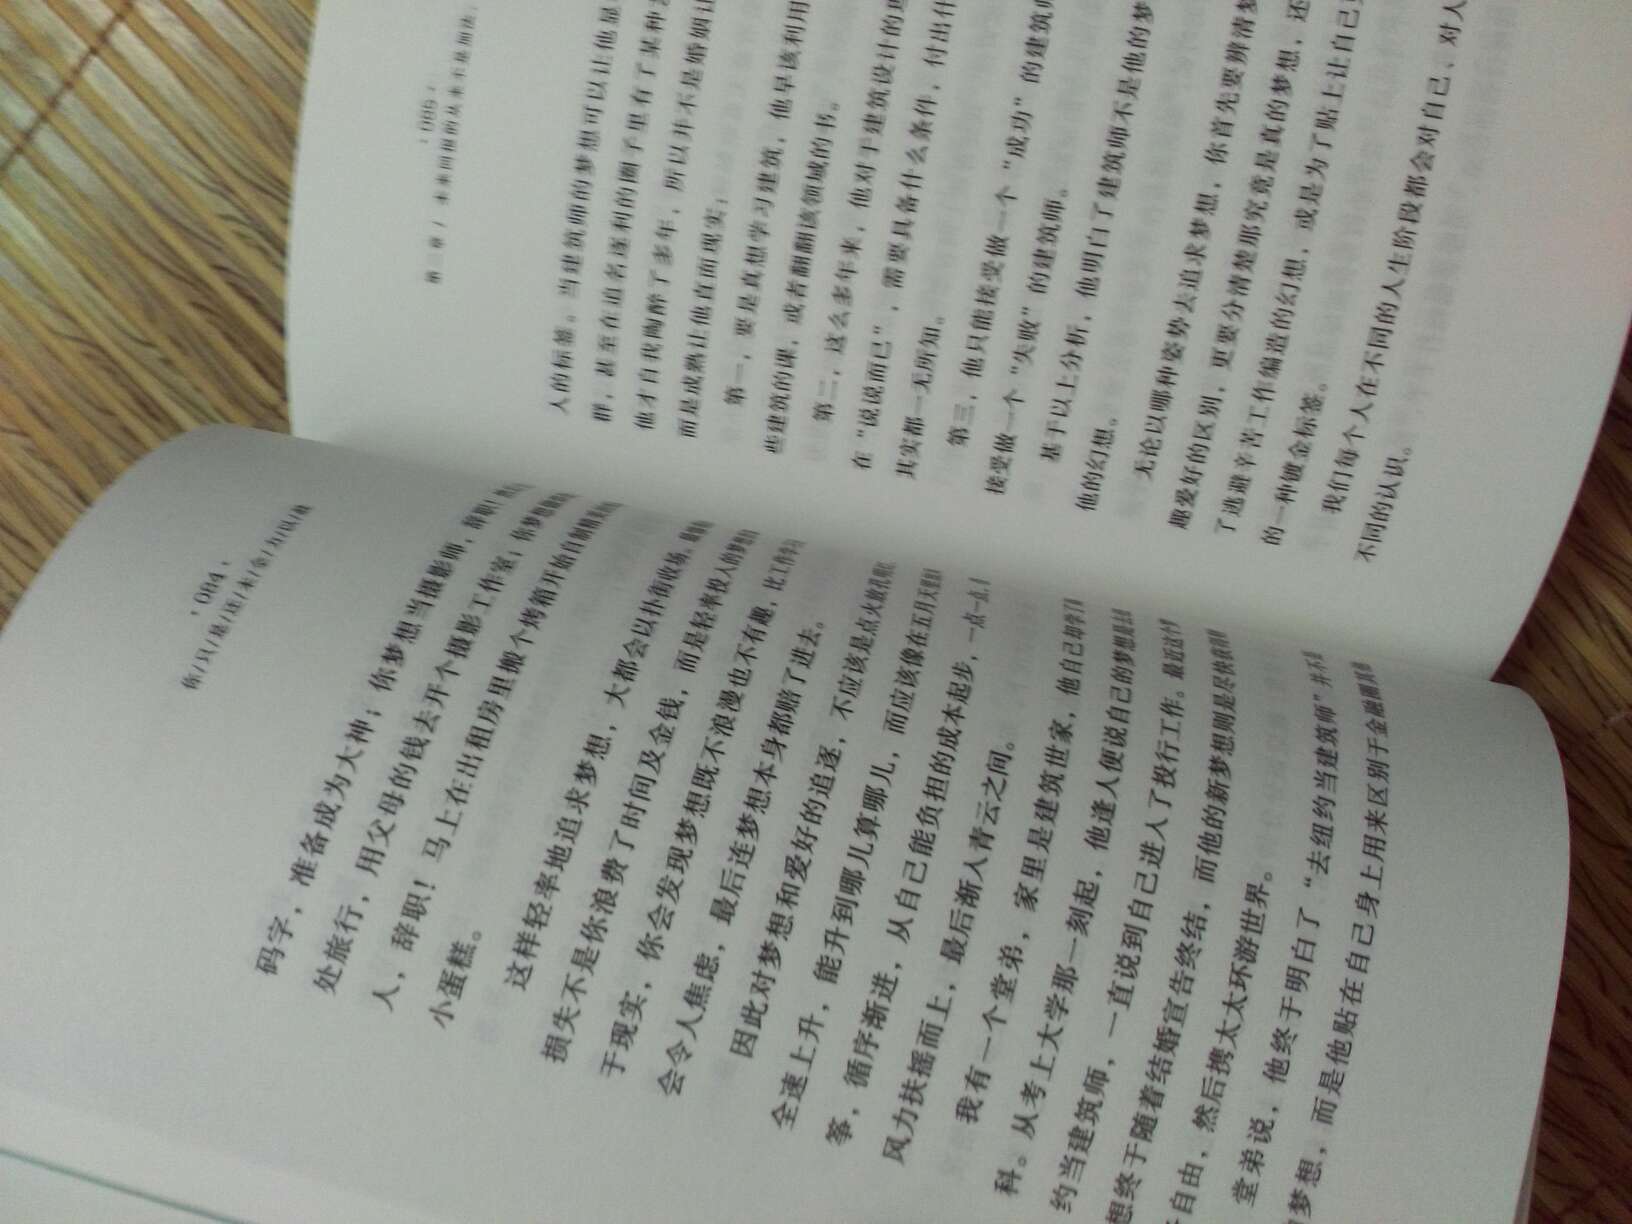 书本不错，想要的类型。书中文字清晰！快递速度也快！超赞哦！